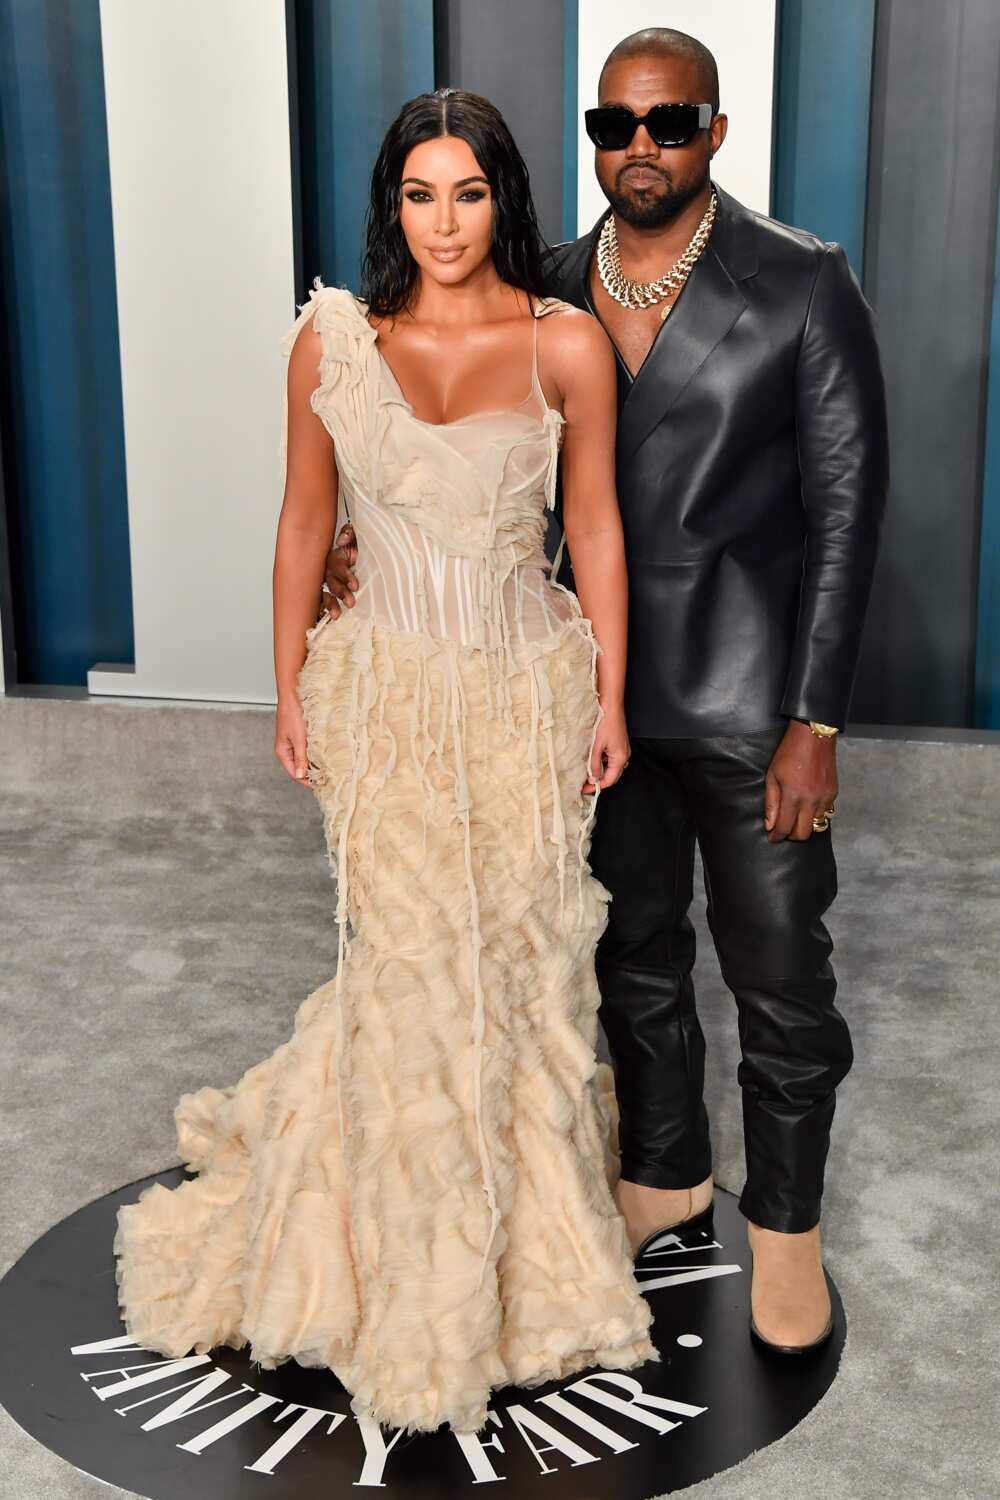 Kim Kardashian West et Kanye West arrivent à la Vanity Fair Oscar Party 2020 organisée par Radhika Jones au Wallis Annenberg Center for the Performing Arts le 09 février 2020 à Beverly Hills, Californie. (Photo par Allen Berezovsky)